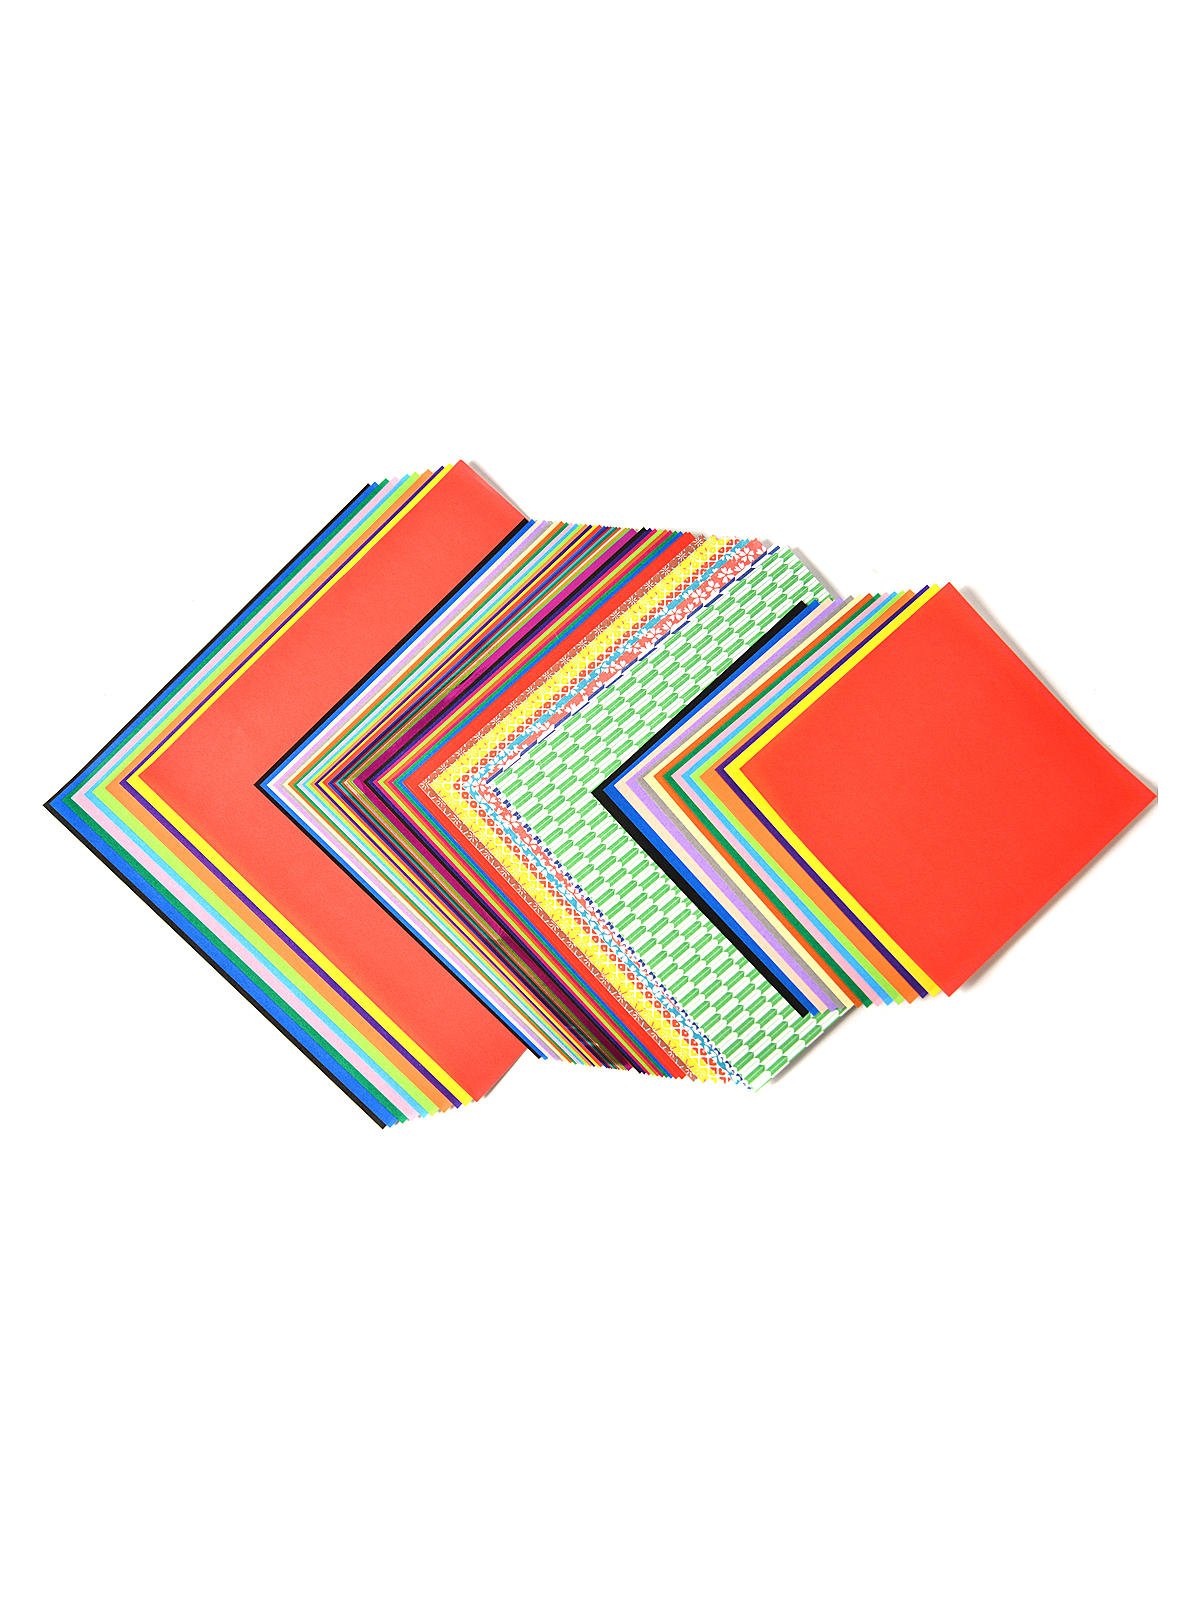 Aitoh OG-KIT Origami Paper Kit